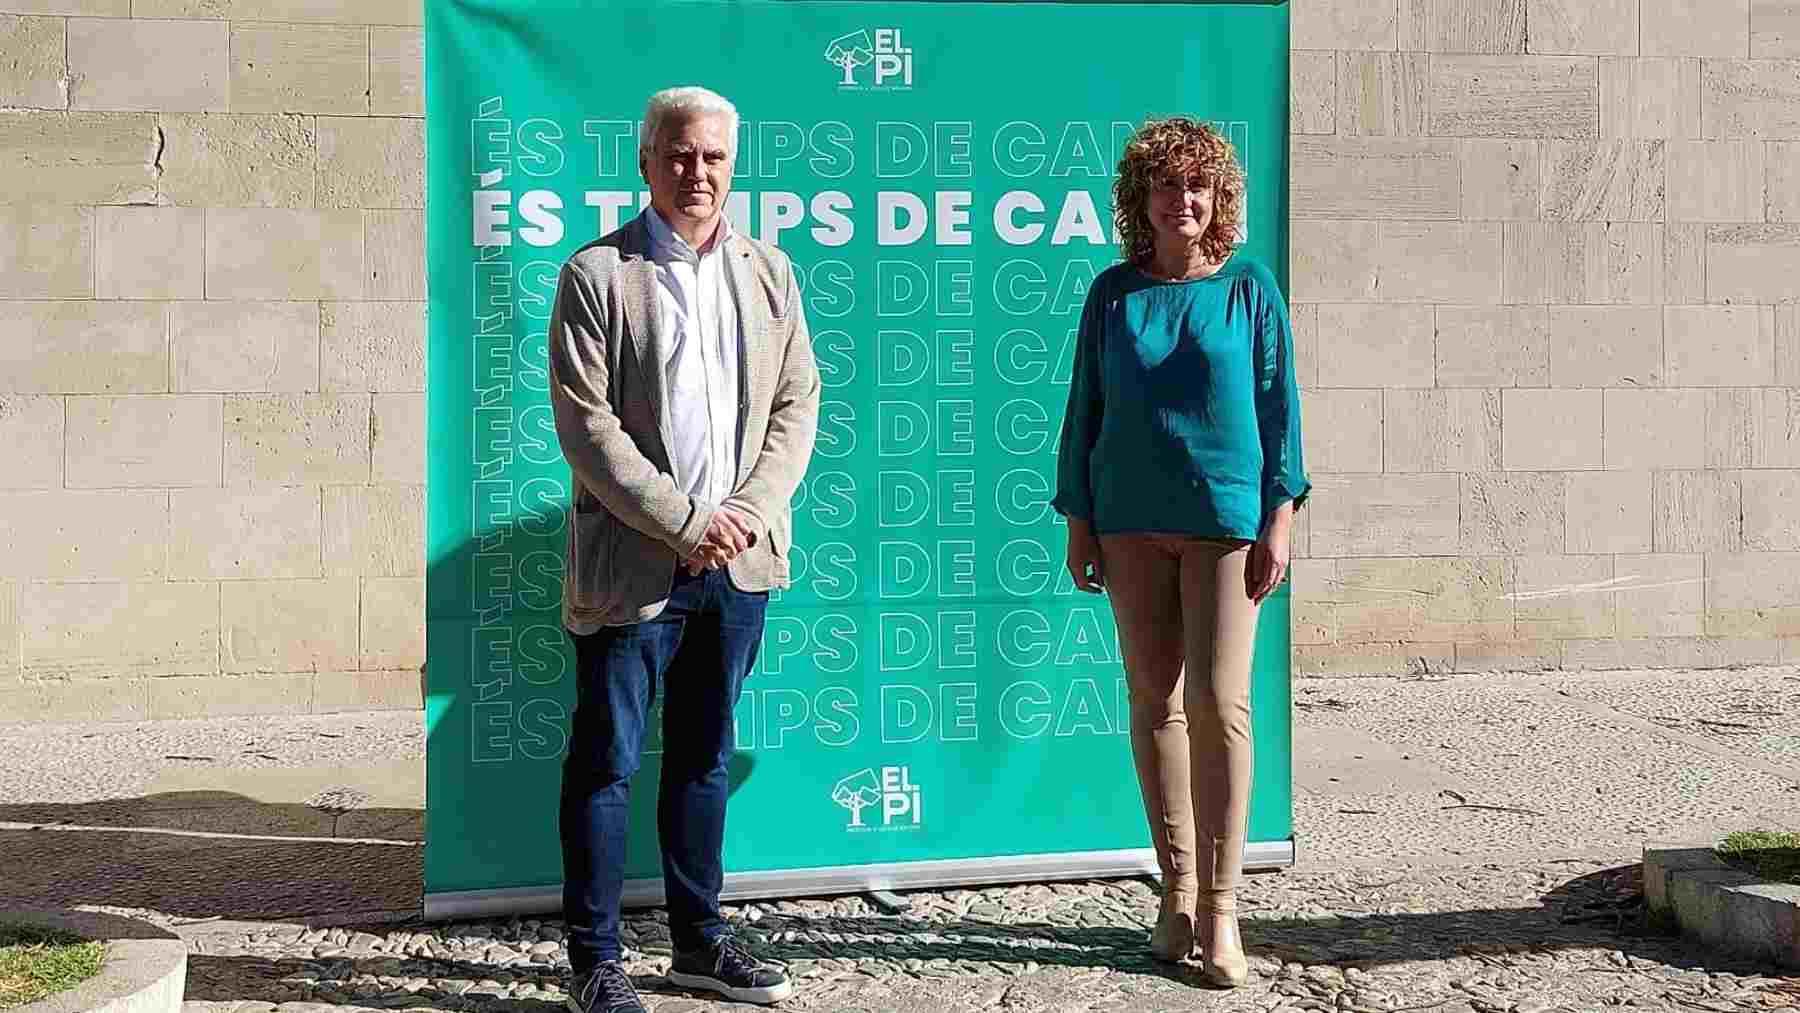 Josep Melià y Xisca Mora presentan su candidatura a las primarias de El PI al Parlament.